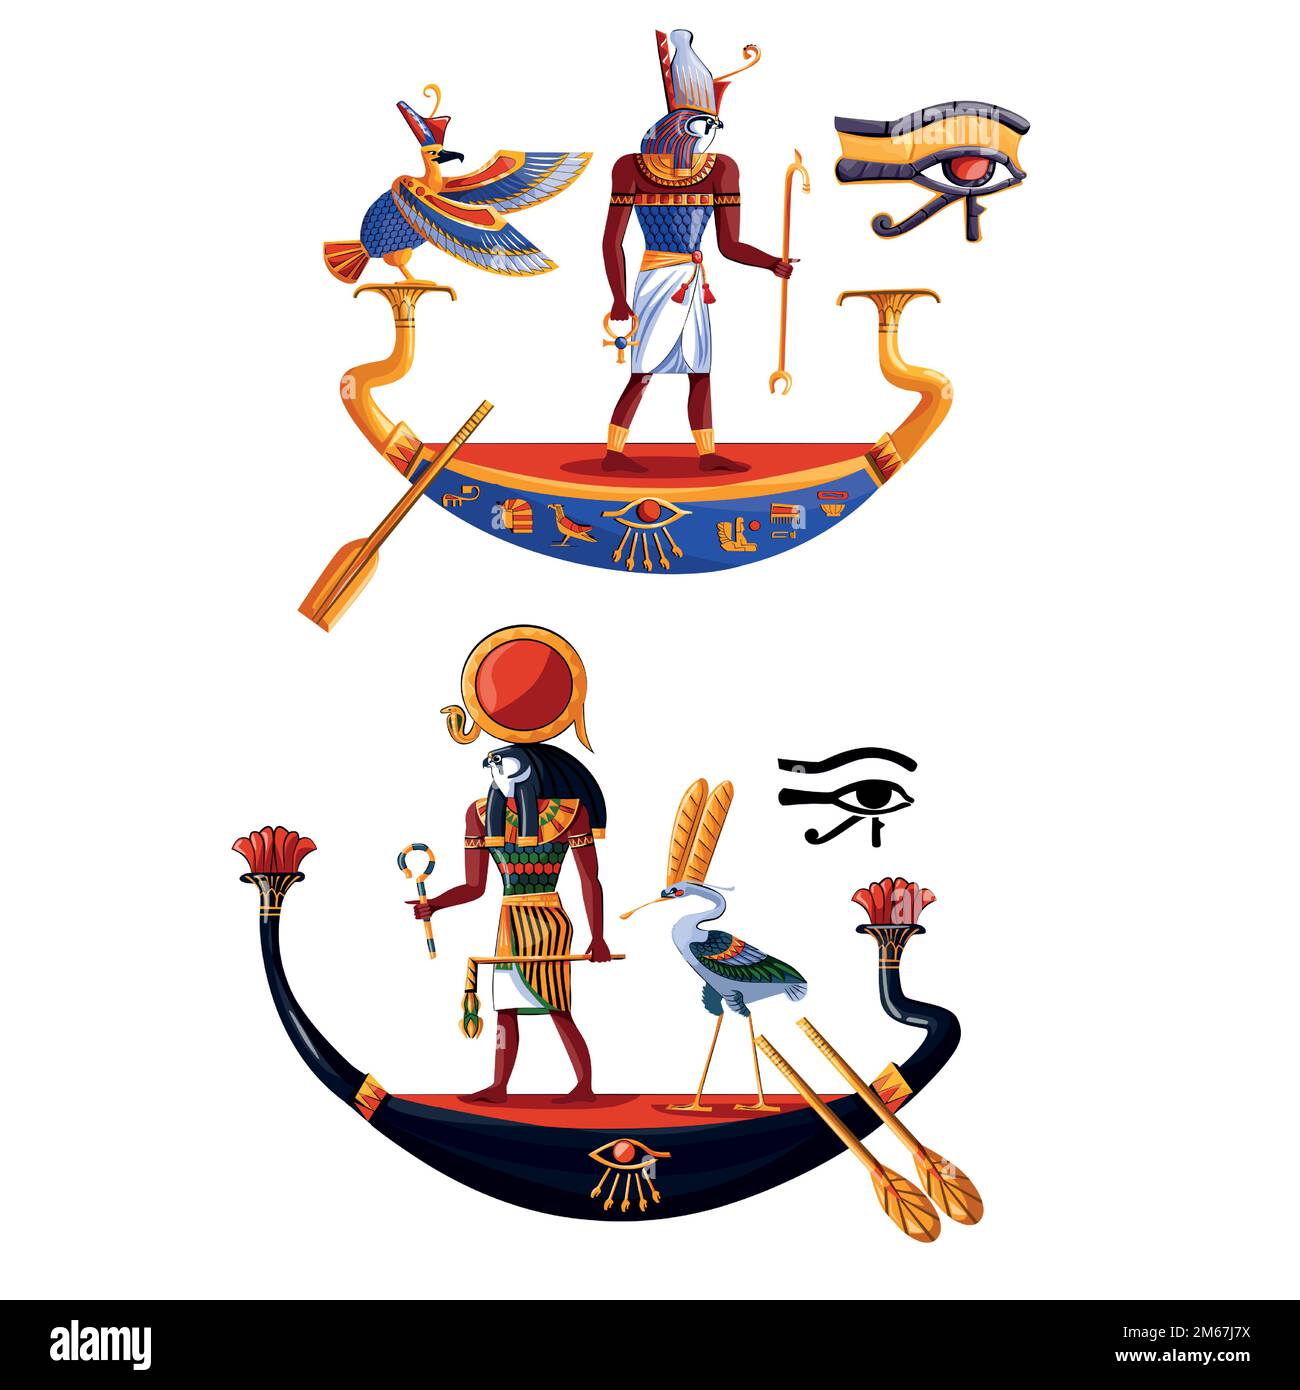 Antico Egitto sole dio Ra o Horus cartoon illustrazione vettoriale. Cultura egiziana simboli religiosi, antico dio-falco in barca notte e giorno, uccelli sacri, isolati su sfondo bianco Illustrazione Vettoriale